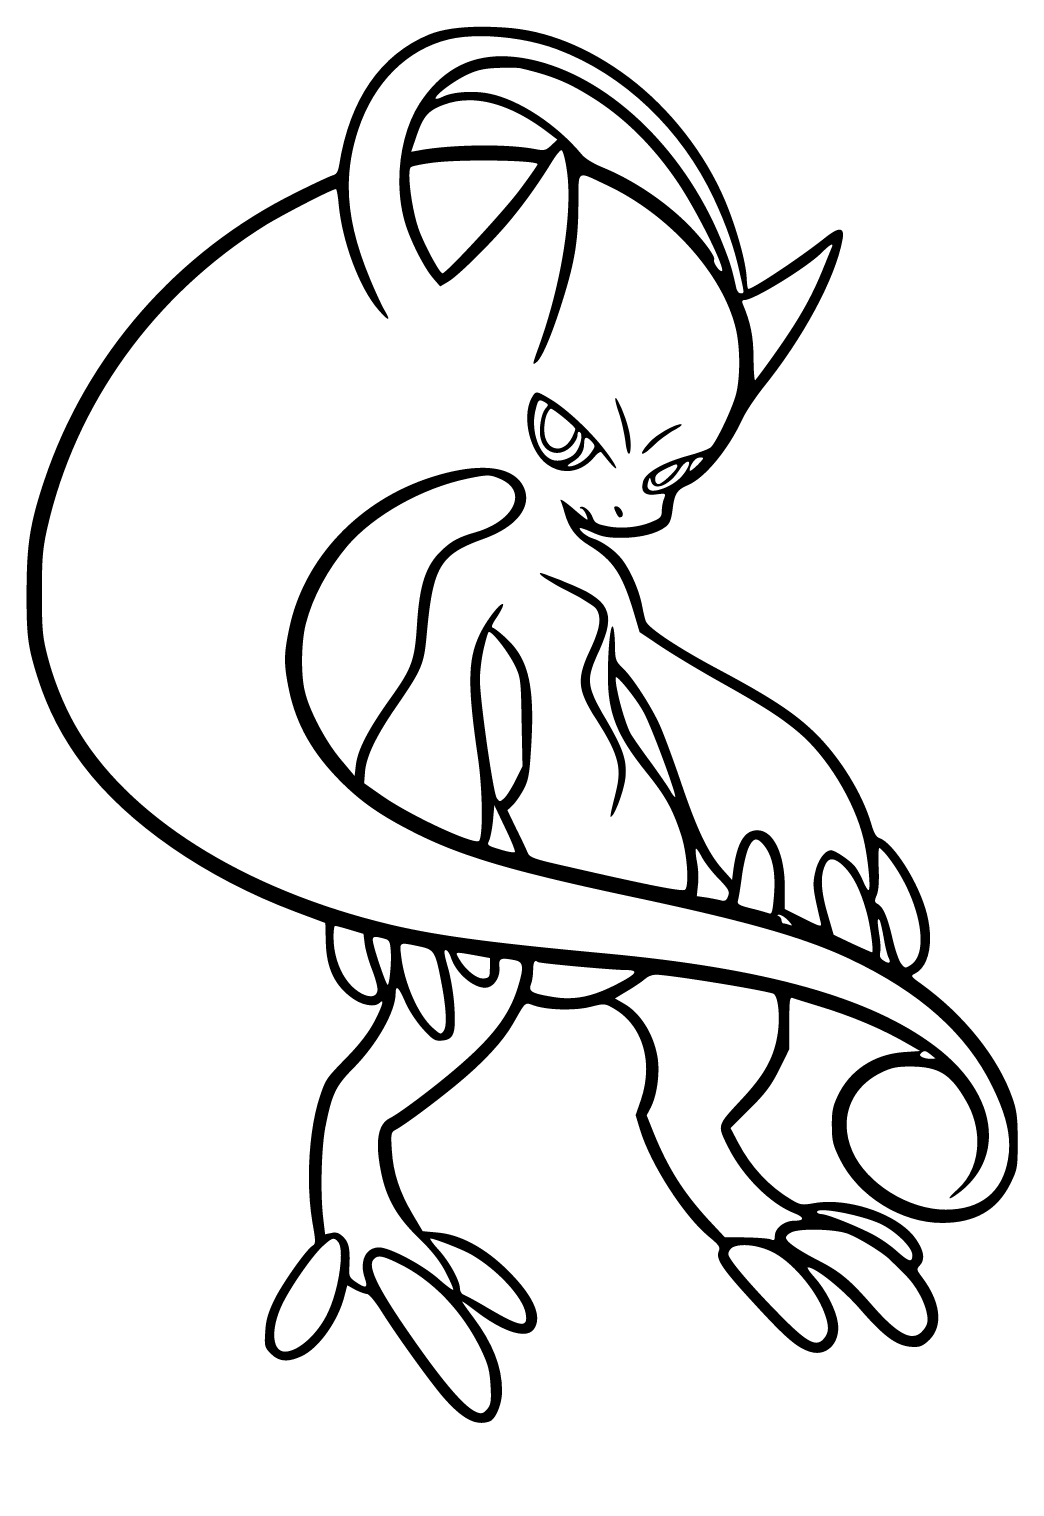 Desenho de Mewtwo para colorir  Desenhos para colorir e imprimir gratis